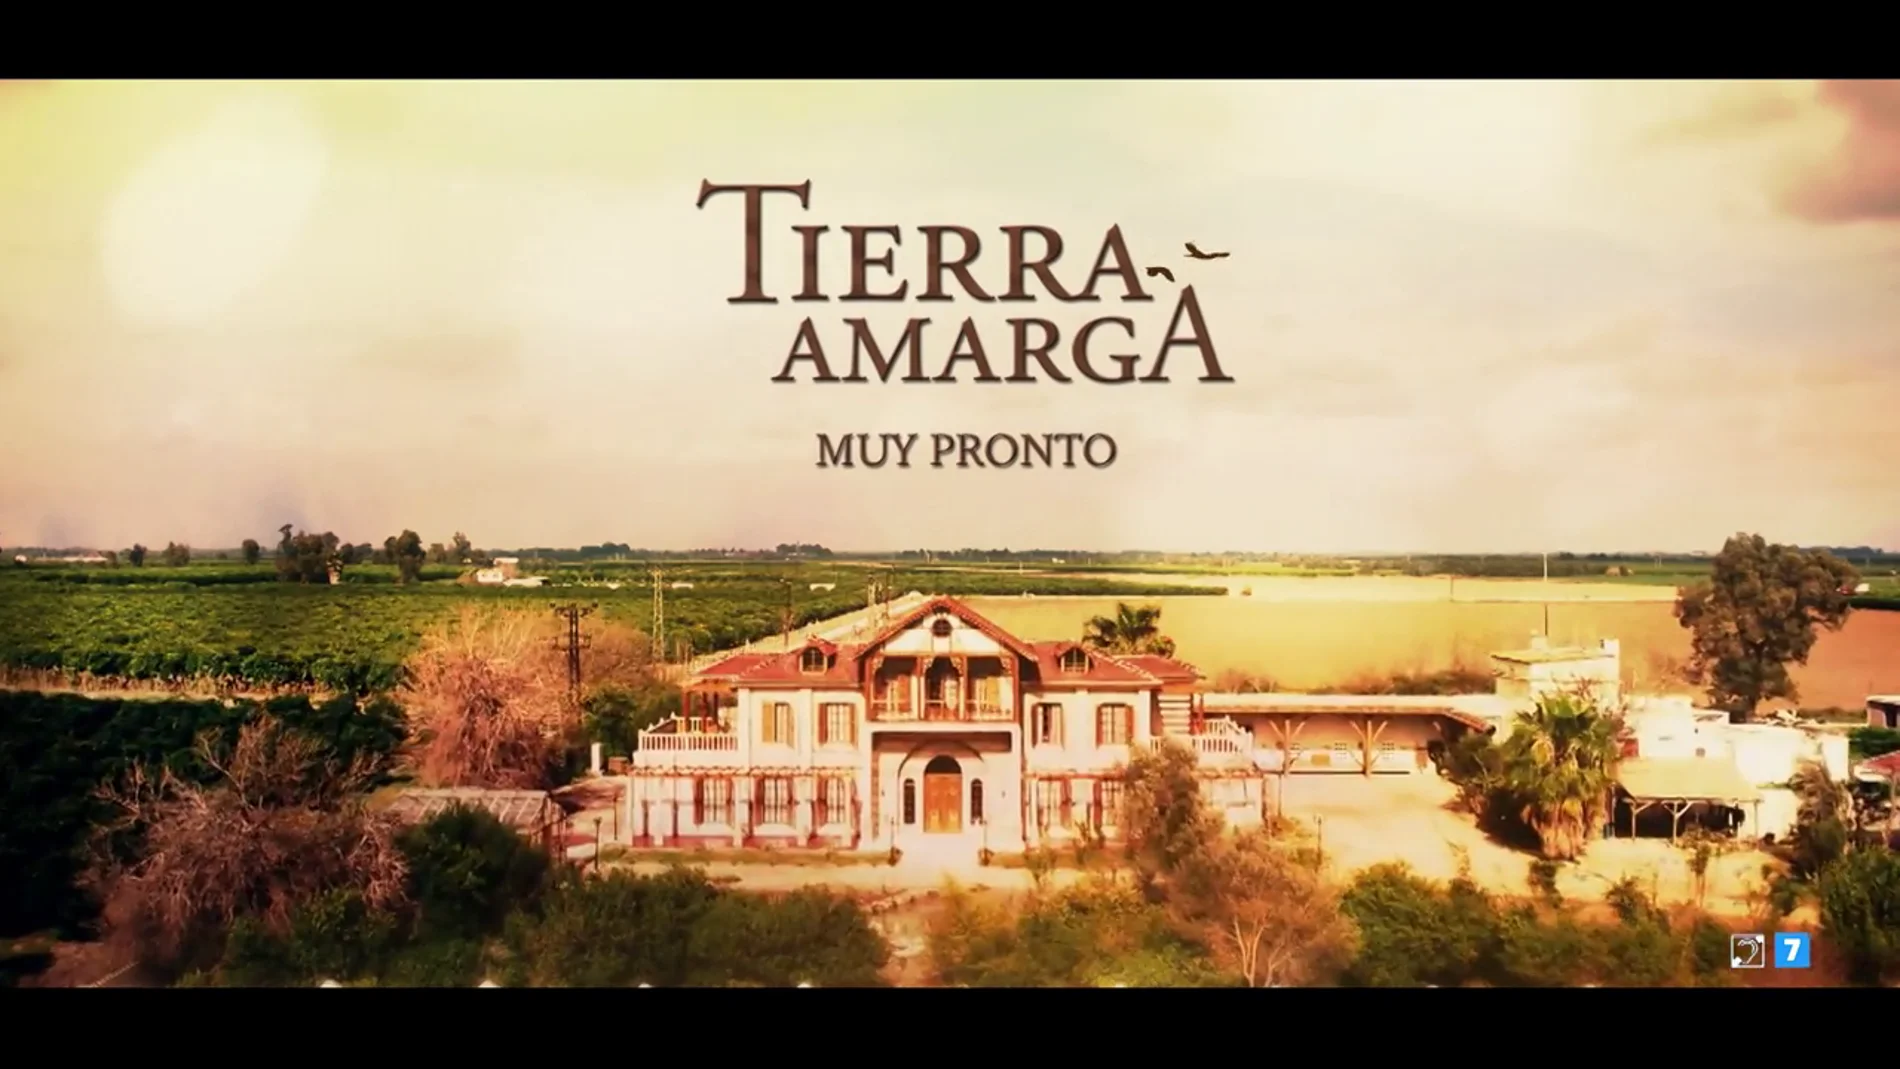 "Si estamos juntos, lo superaremos todo": 'Tierra Amarga', muy pronto en Antena 3